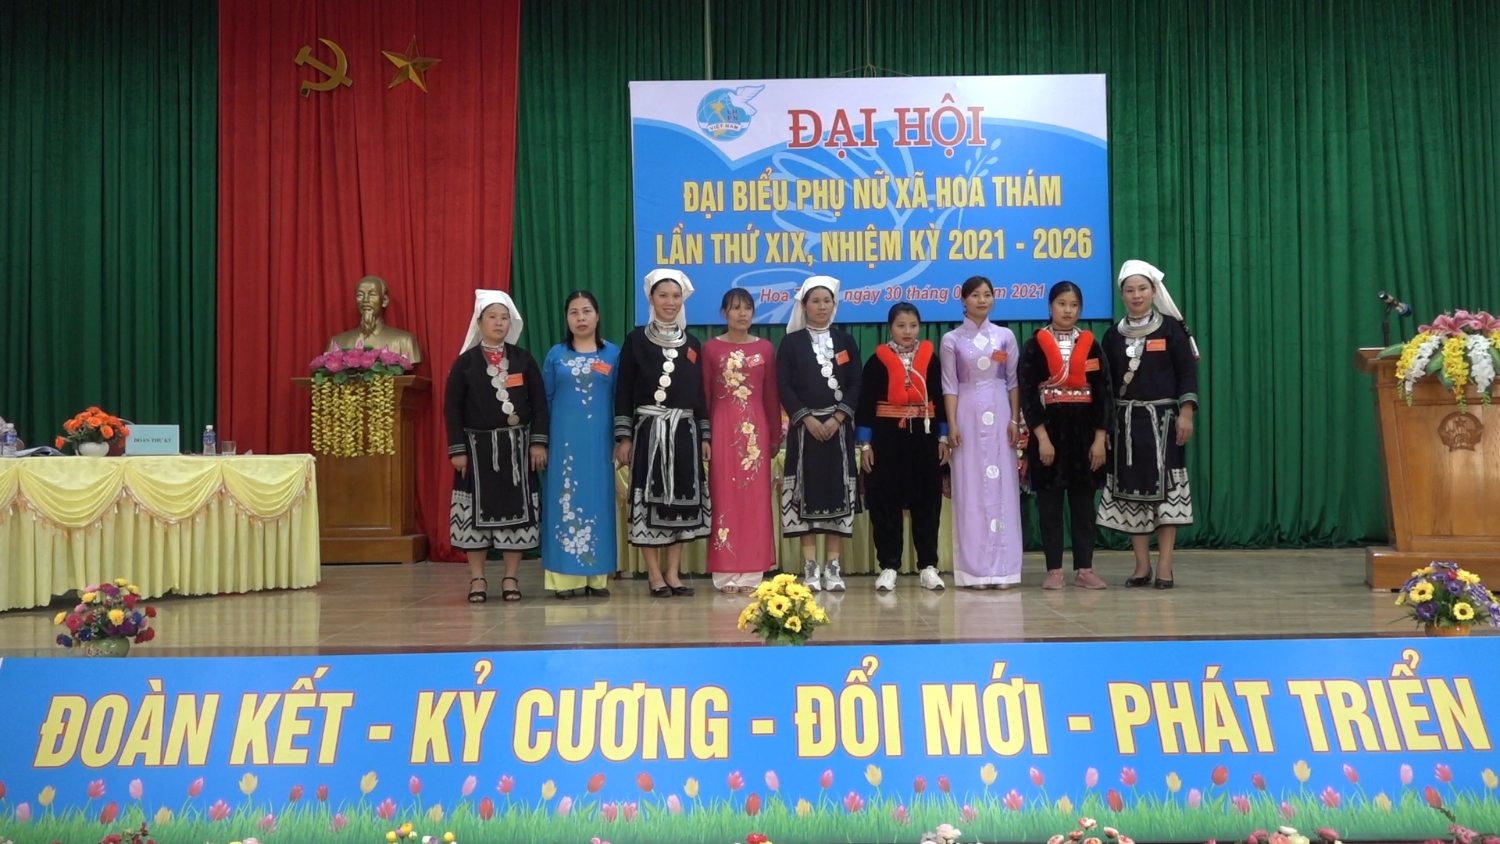 Hội LHPN huyện Nguyên Bình tổ chức Đại hội điểm cấp cơ sở